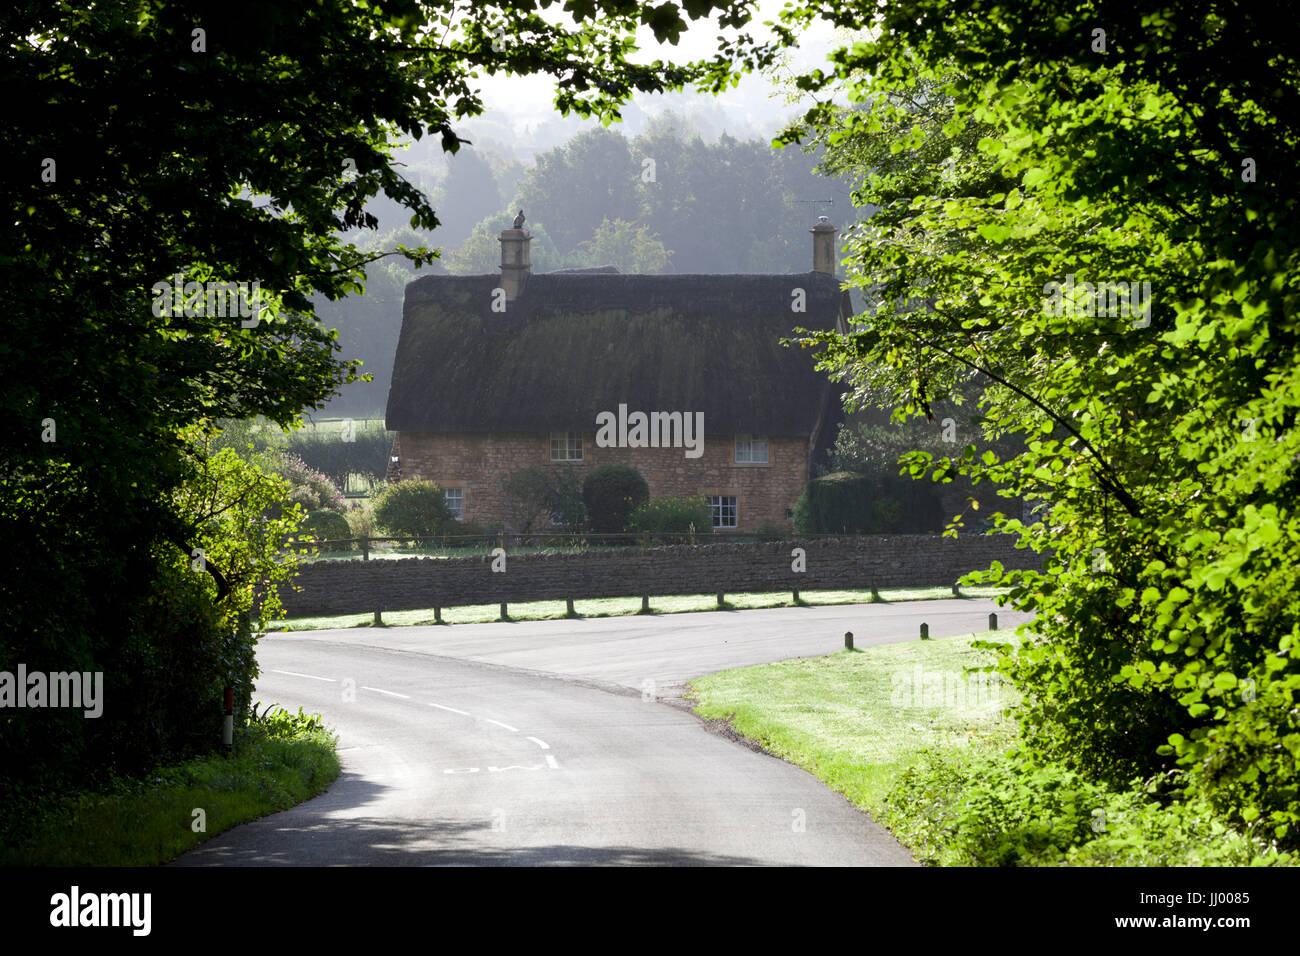 Cotswold cottage de chaume entourée d'arbres, Chipping Campden, Cotswolds, Gloucestershire, Angleterre, Royaume-Uni, Europe Banque D'Images